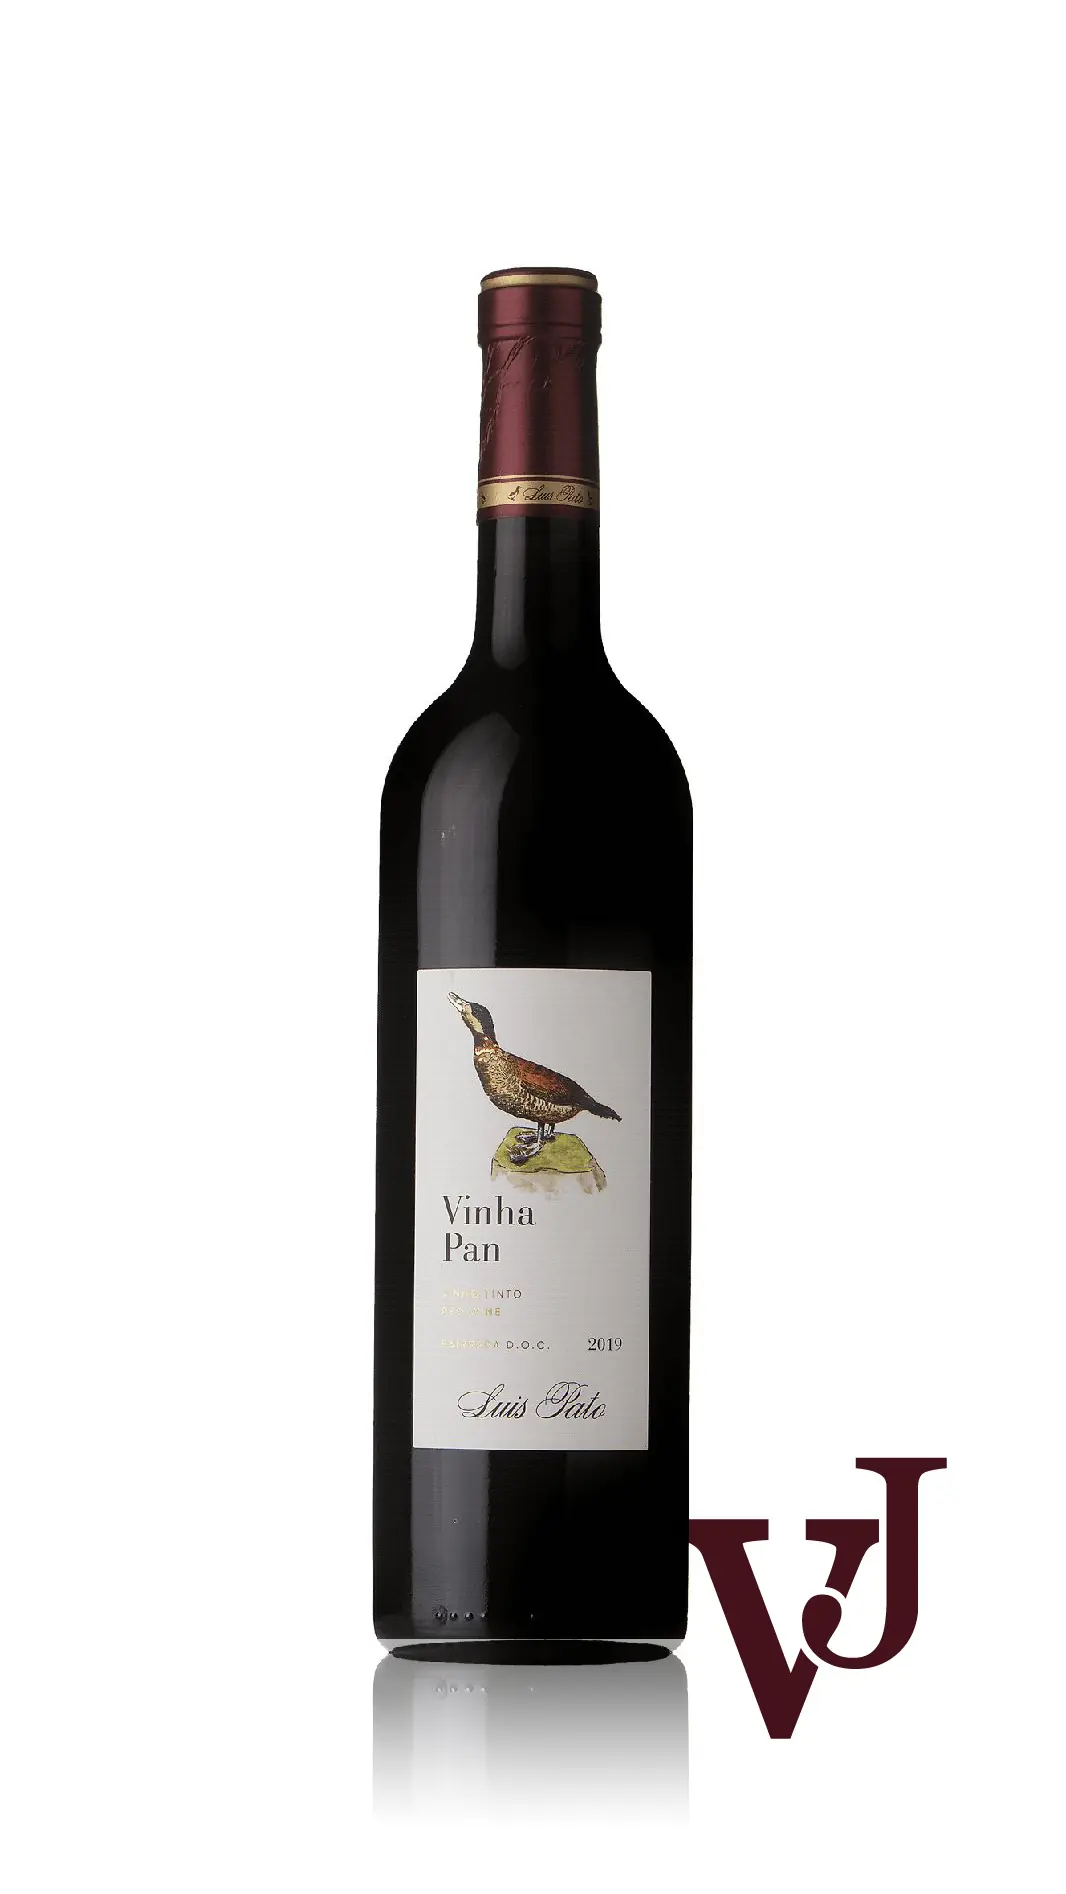 Rött Vin - Vinha Pan Luis Pato 2019 artikel nummer 9473001 från producenten Luis Pato från området Portugal - Vinjournalen.se